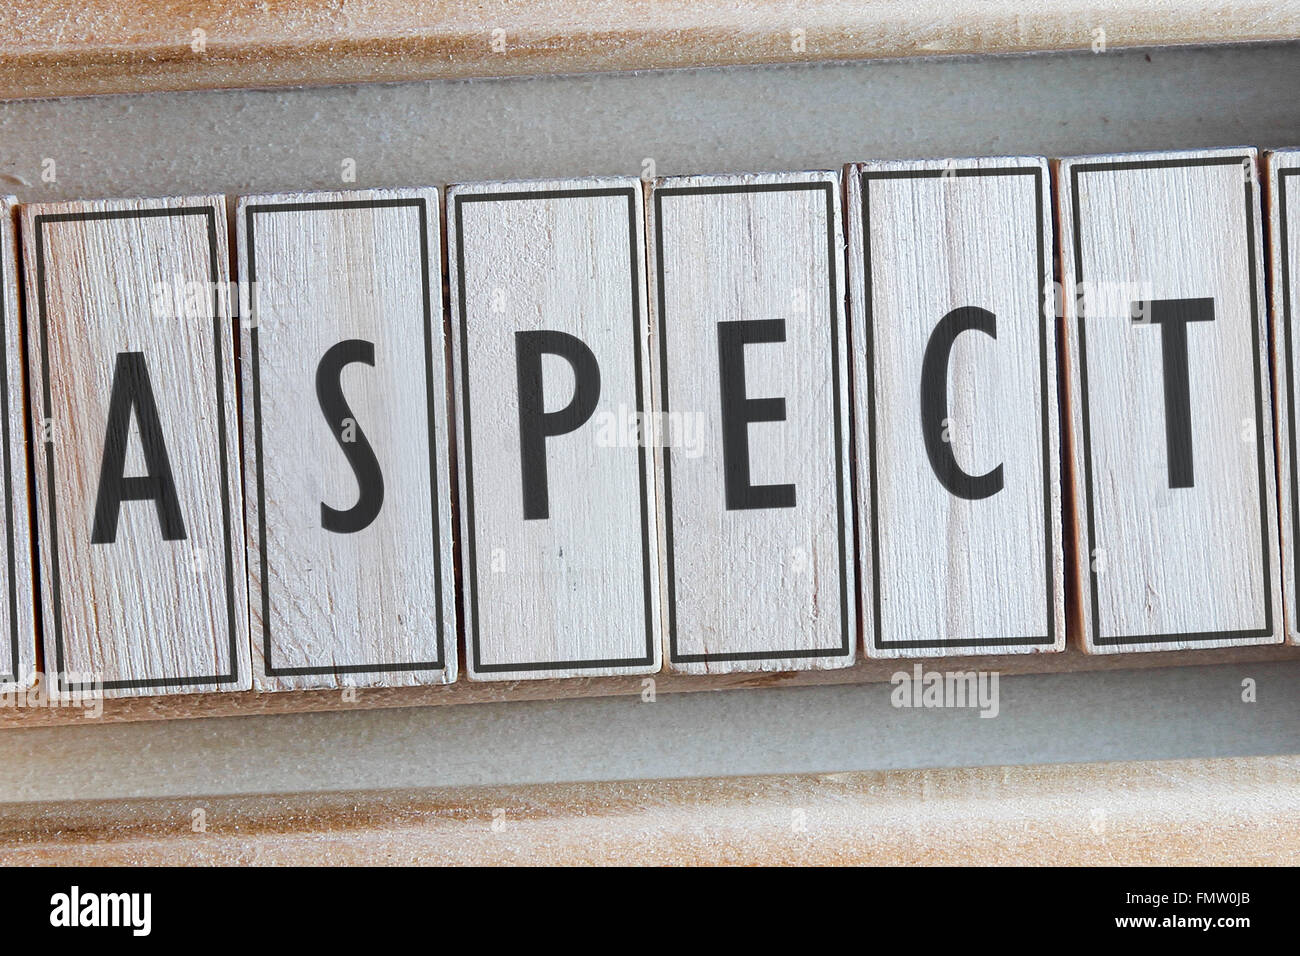 Aspect word written on wood Stock Photo